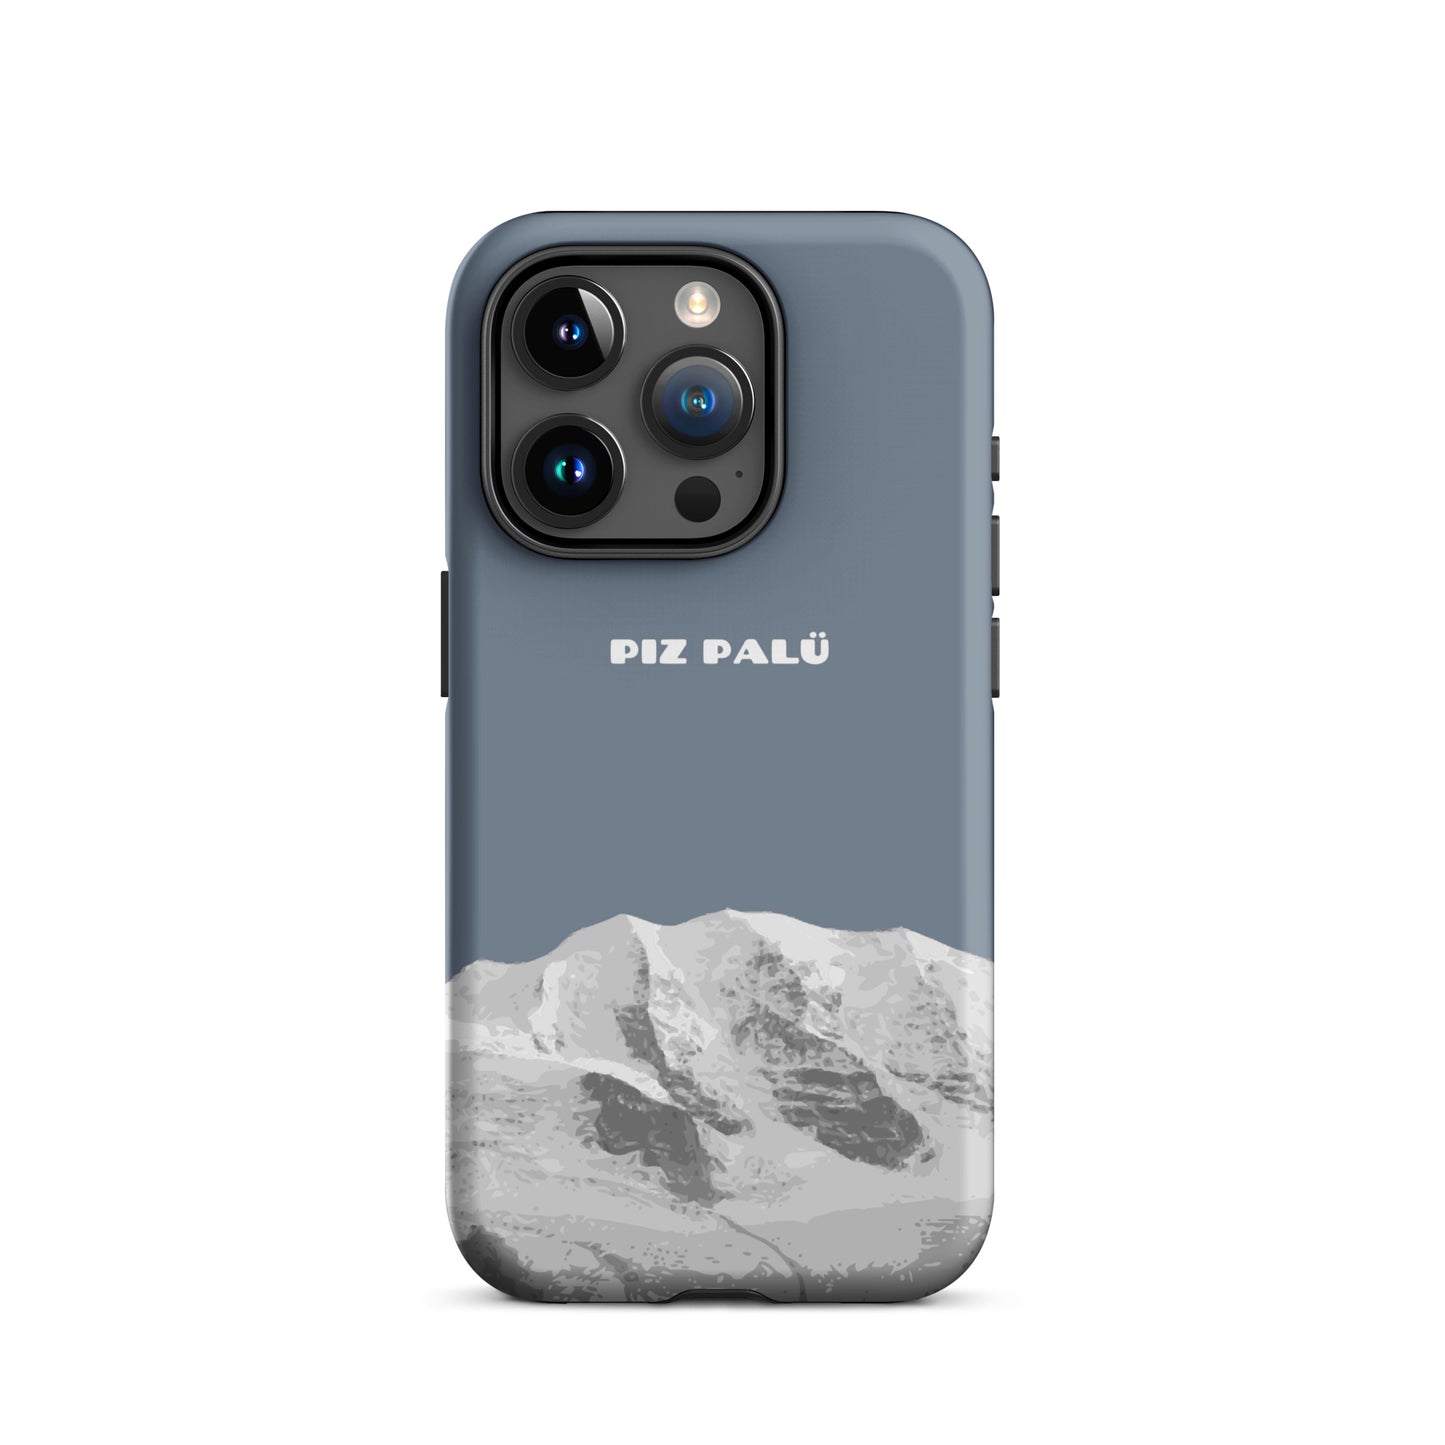 Hülle für das iPhone 15 Pro von Apple in der Farbe Schiefergrau, dass den Piz Palü in Graubünden zeigt.